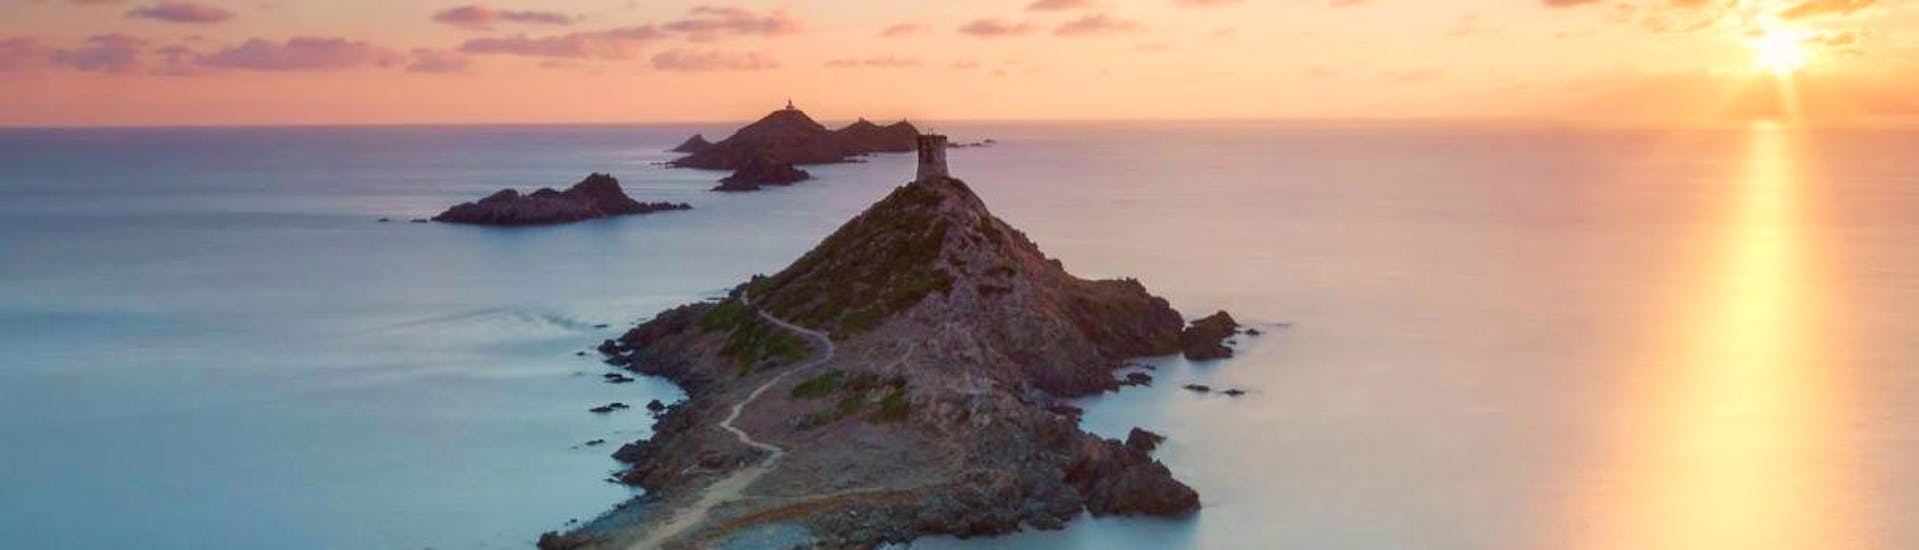 Vue lors de laBalade en bateau au coucher du soleil aux îles Sanguinaires avec Events Sensation Corse.